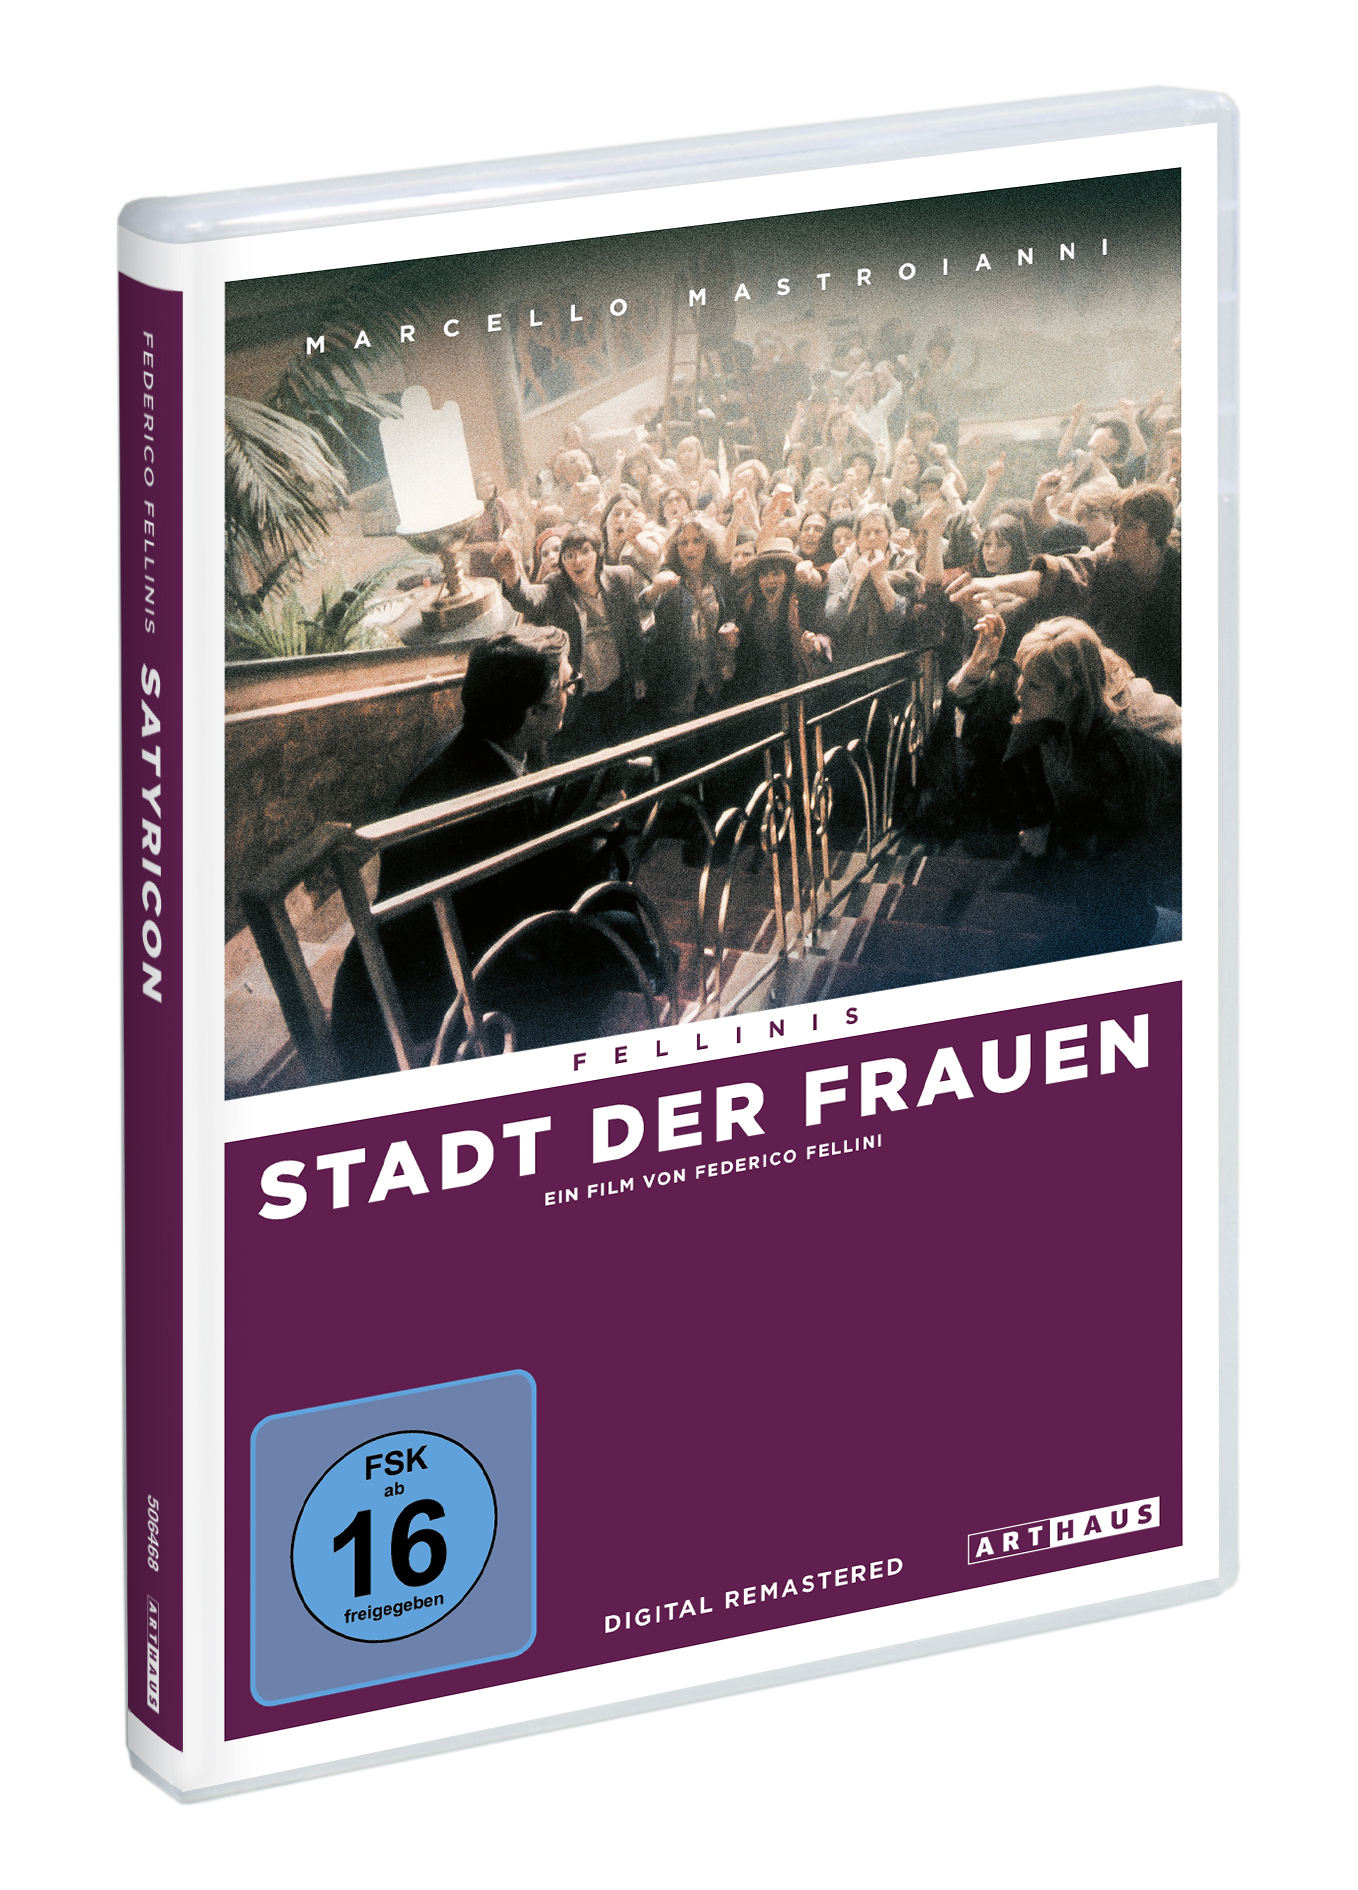 DVD der Stadt Frauen Fellinis